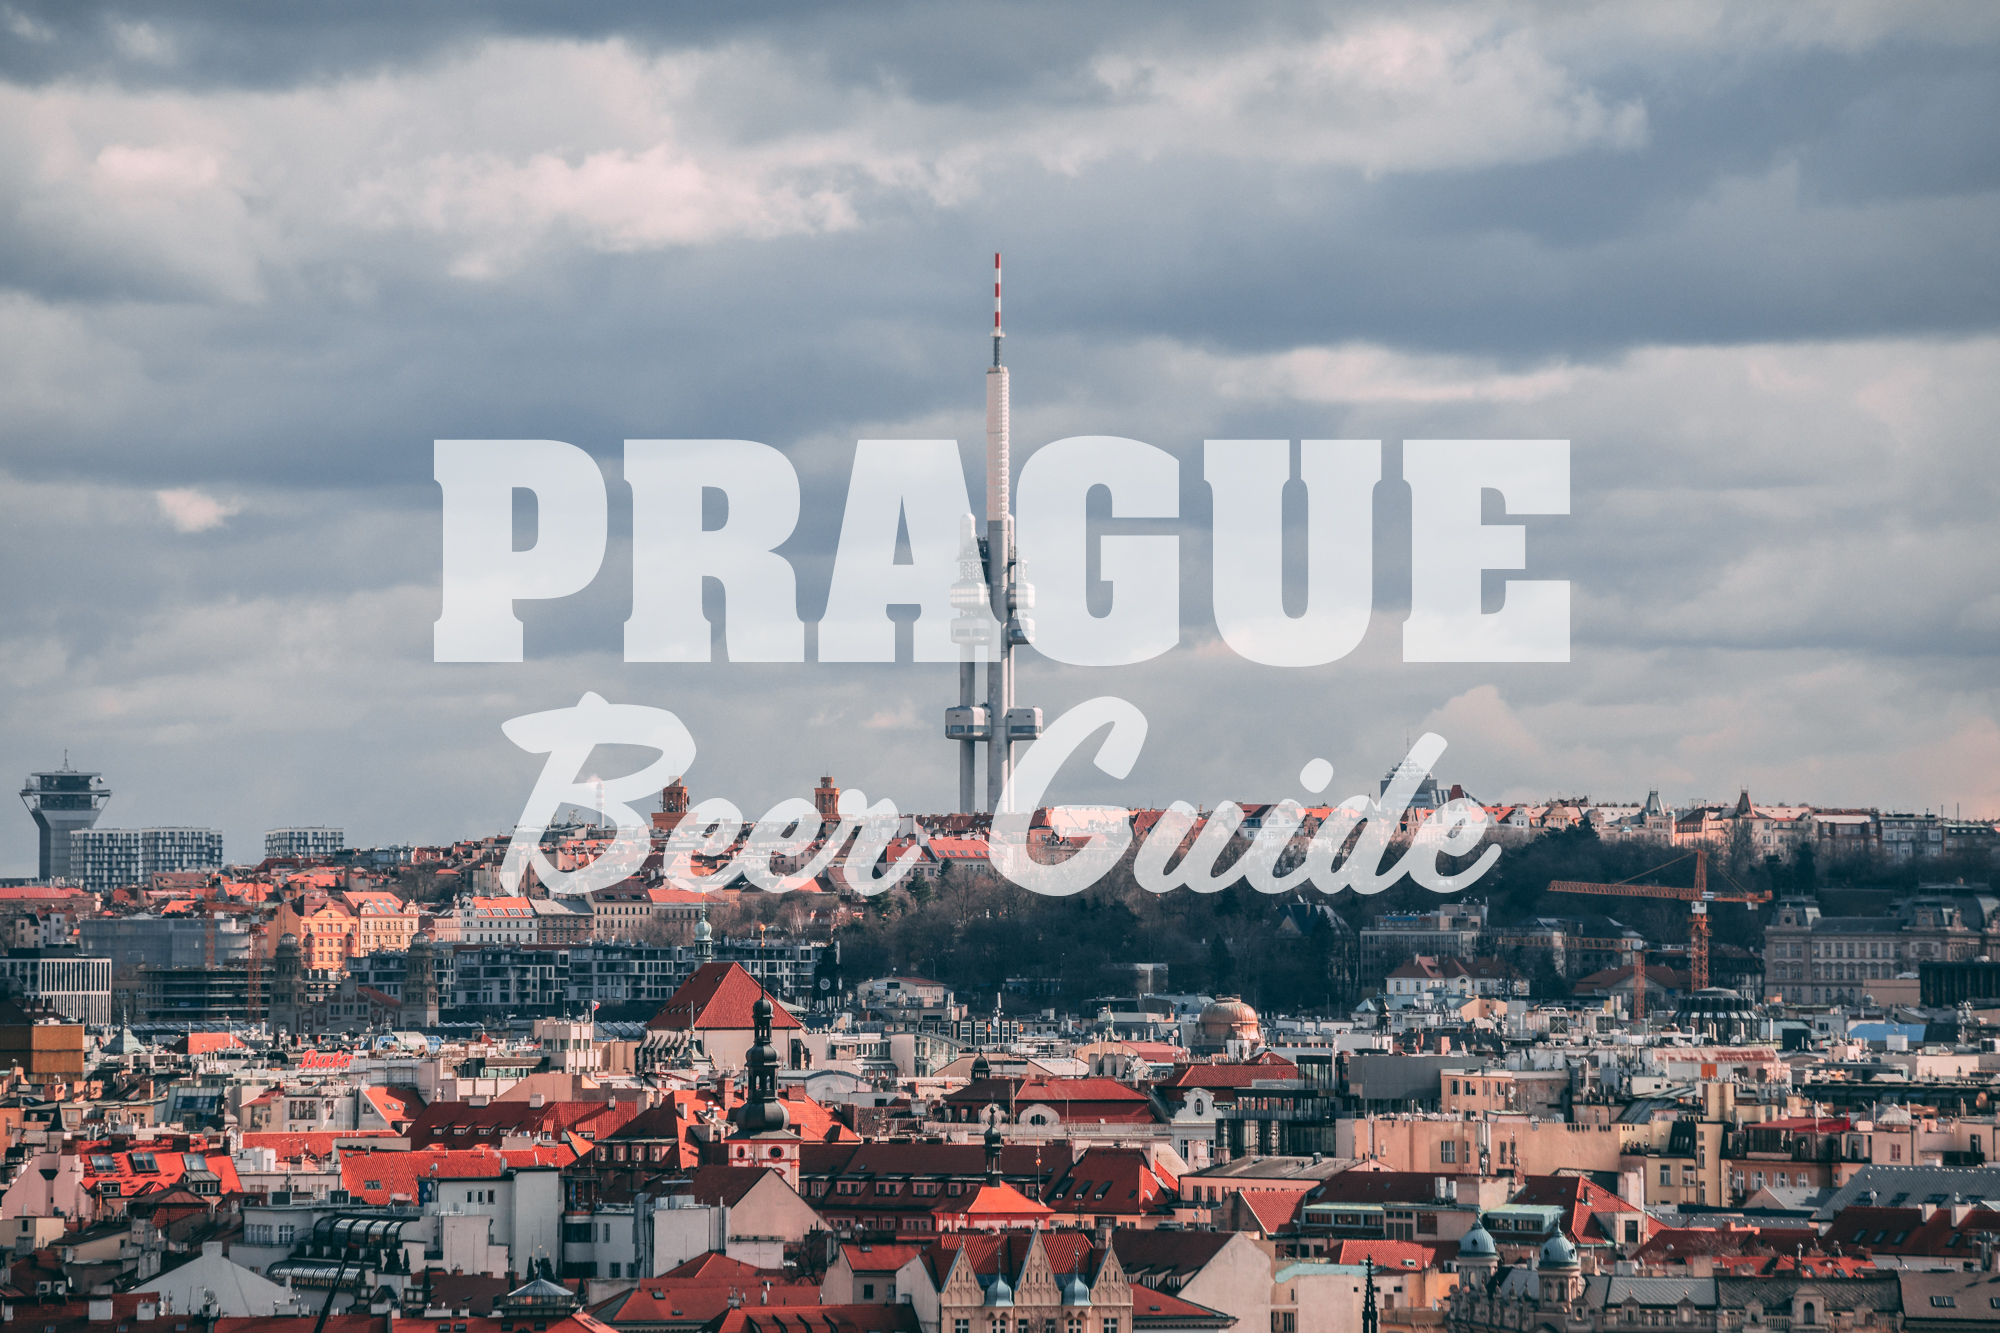 Prague Beer Guide